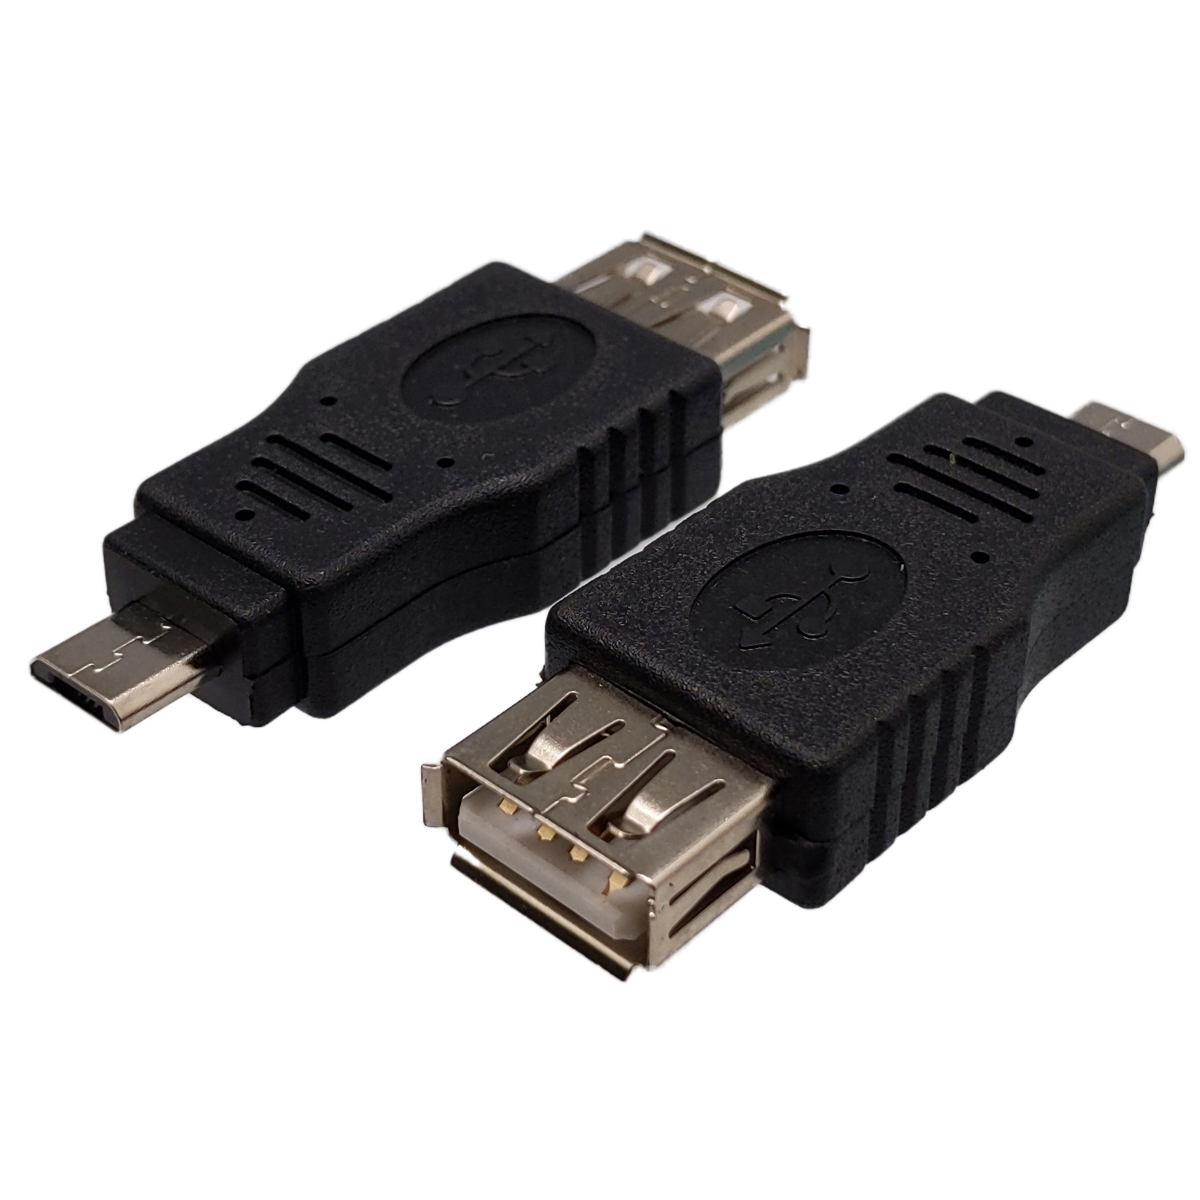 USB A Femelle à MICRO USB, Connecteur OTG